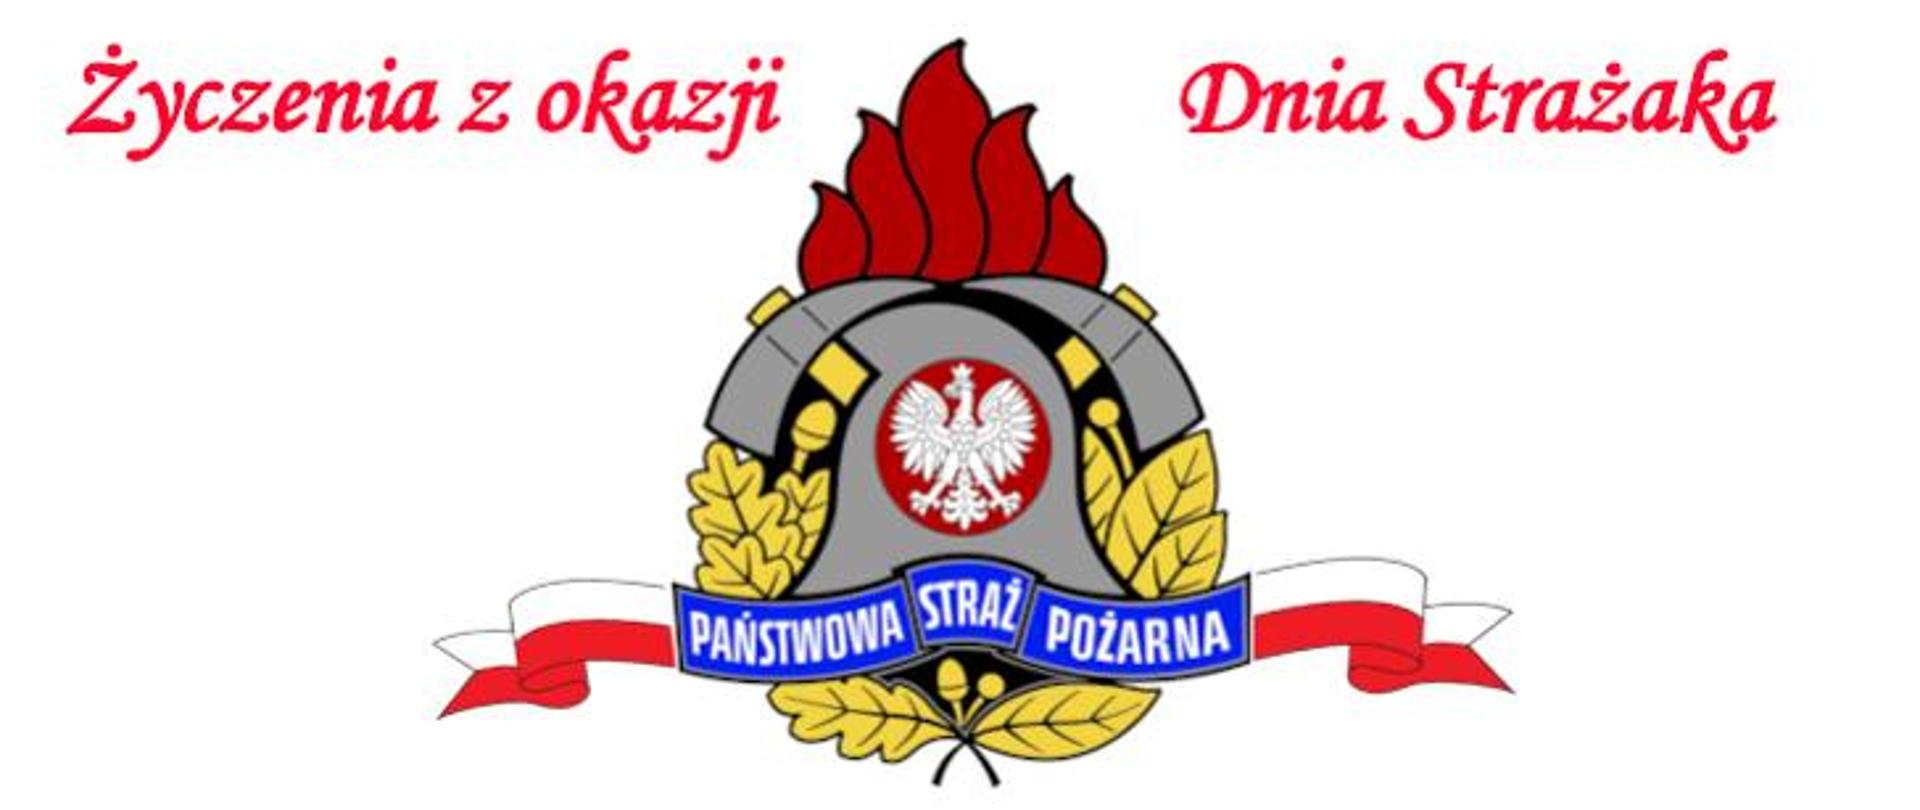 Logo PSP z flagą biało czerwoną. Na górze napis w czerwonym kolorze: Życzenia z okazji Dnia Strażaka